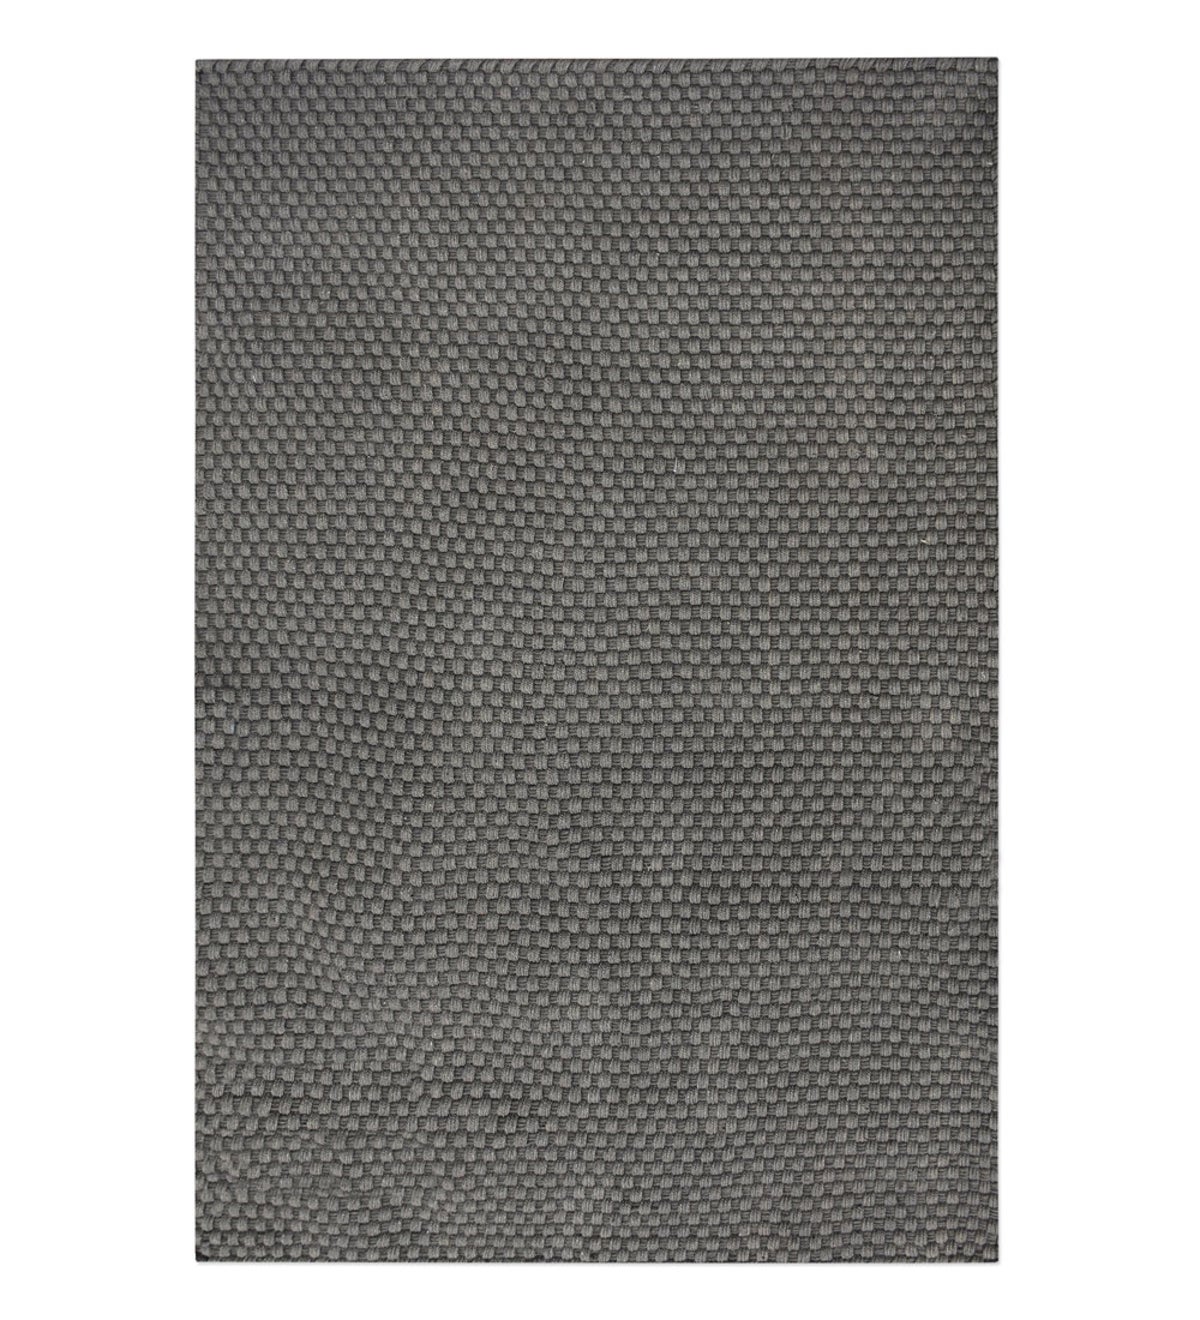 Handwoven Recycled Plastic Indoor/Outdoor Rug - Beige 5x8 - Dark Gray